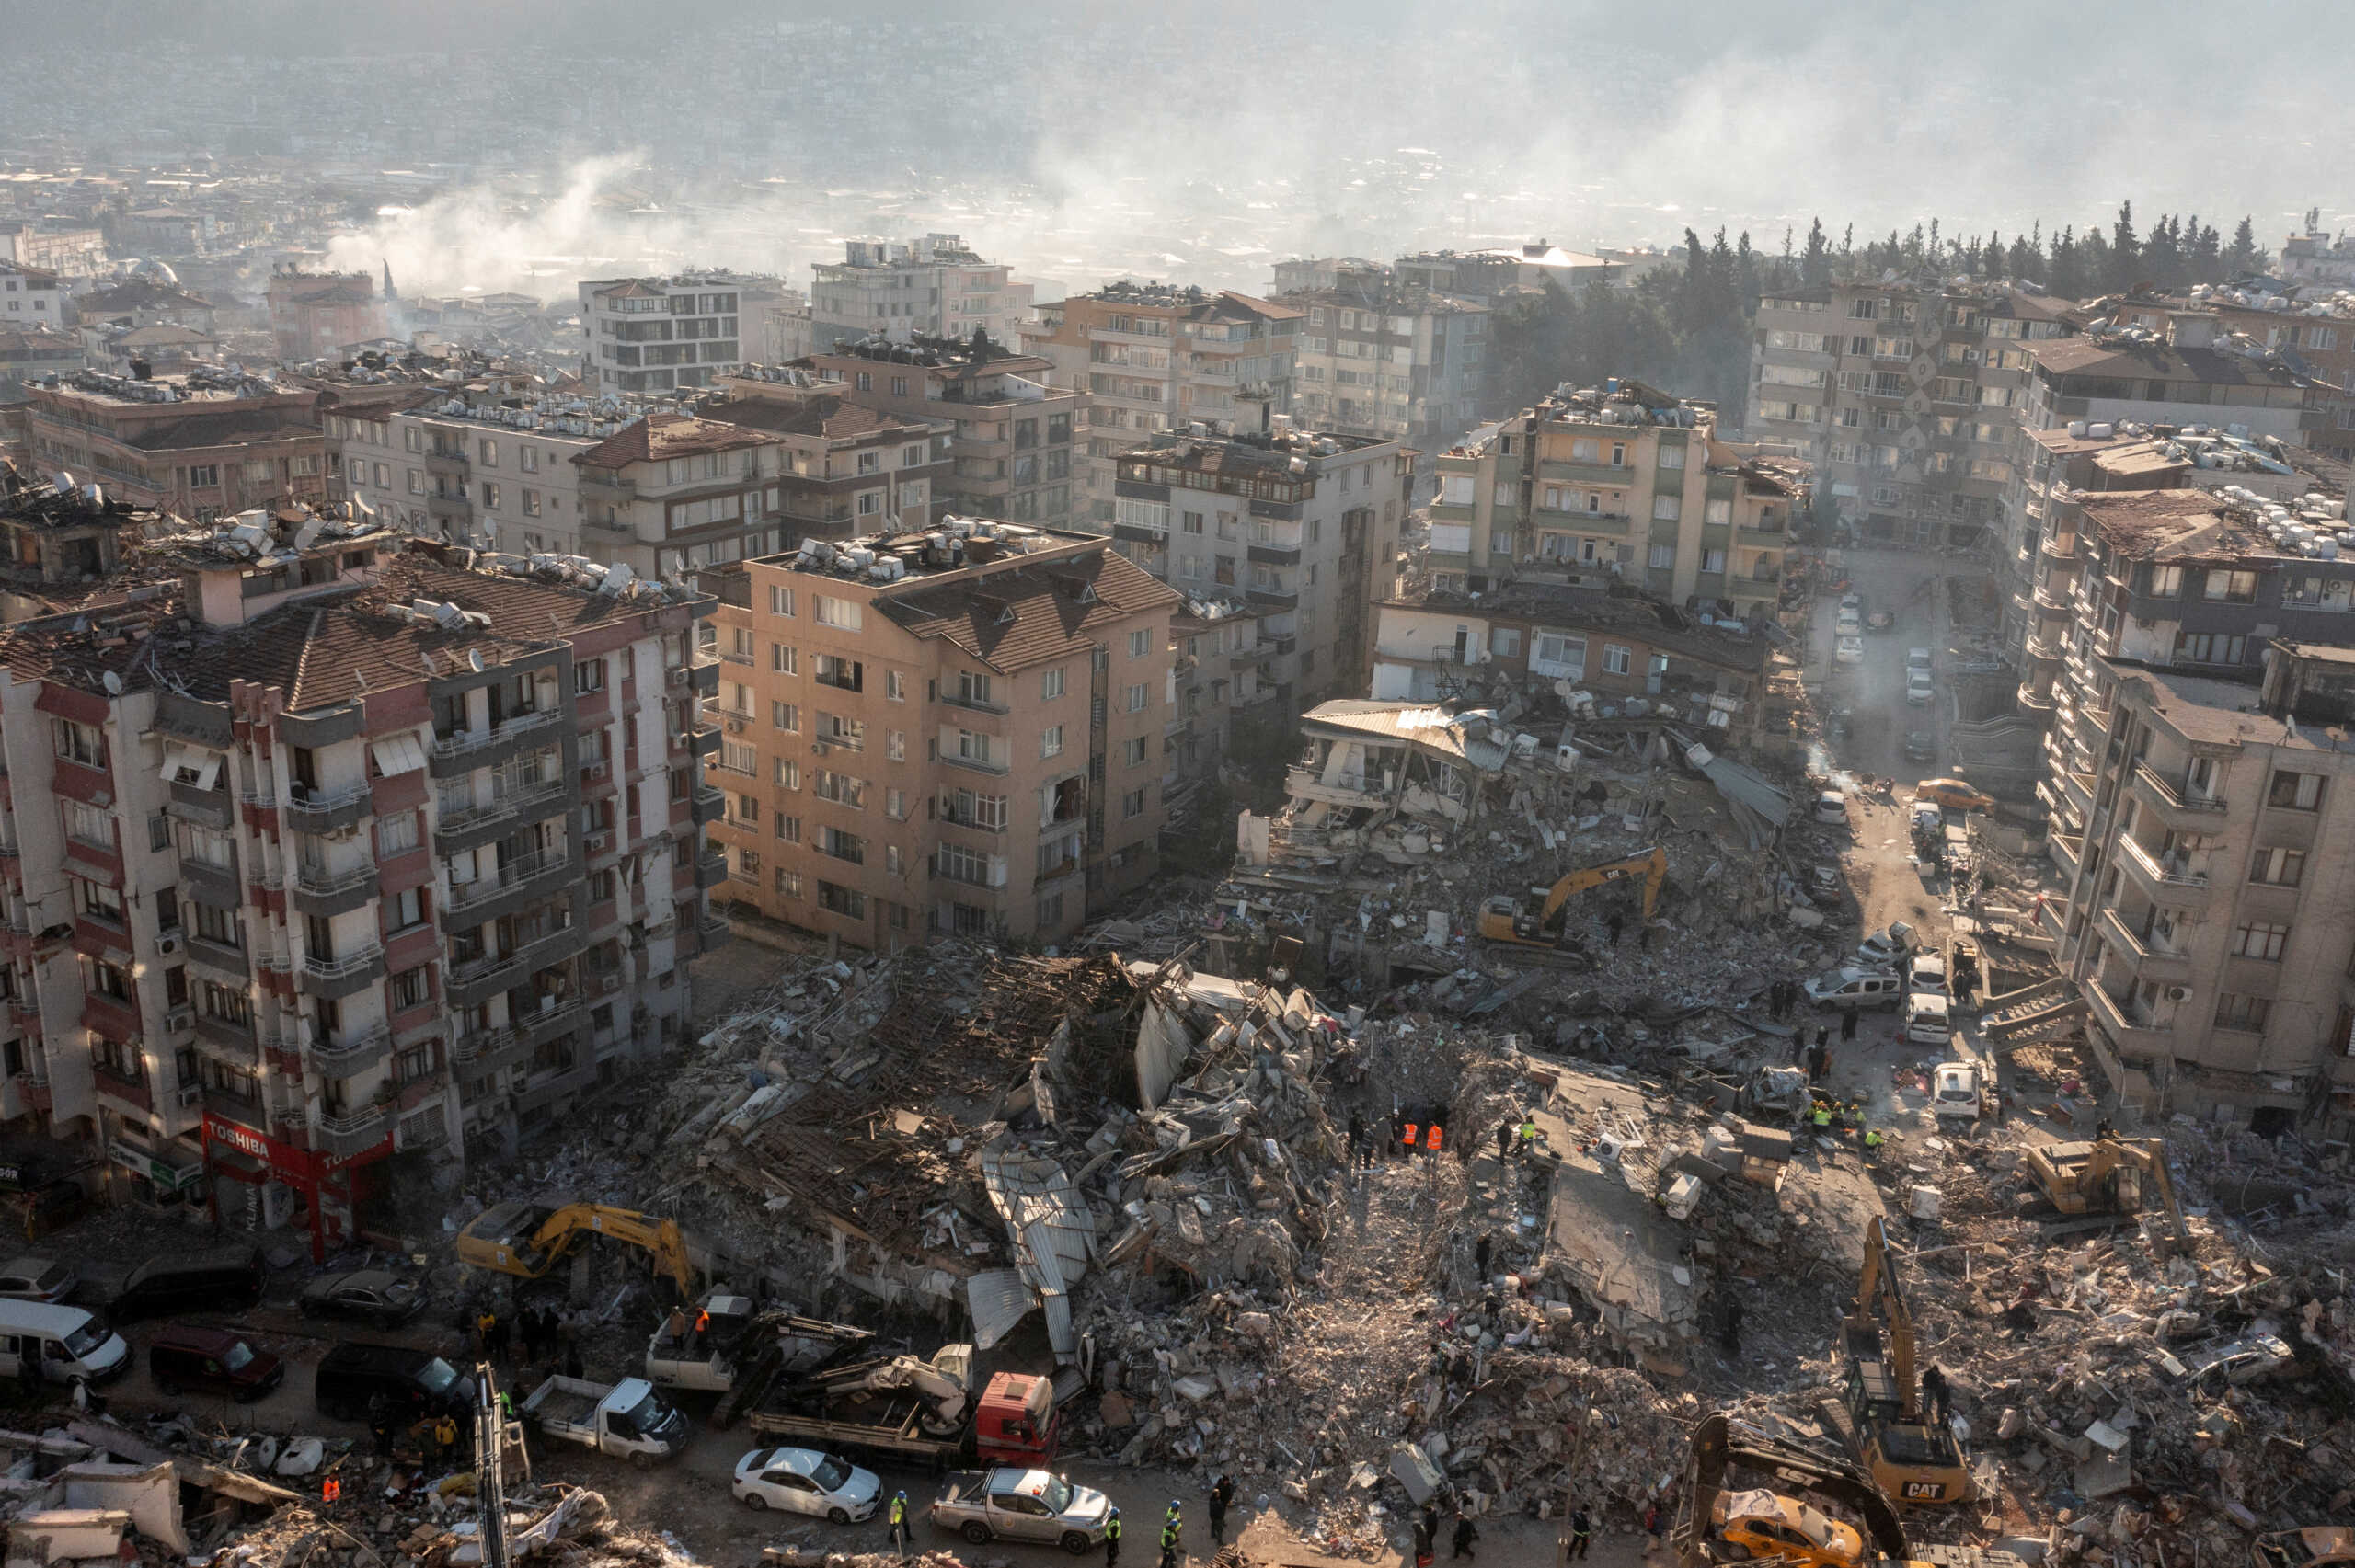 Σεσιμός στην Τουρκία: Εκδόθηκαν οι κανονισμοί ανοικοδόμησης στις σεισμόπληκτες περιοχές – Θα μπορούν να χτίζουν… όλοι